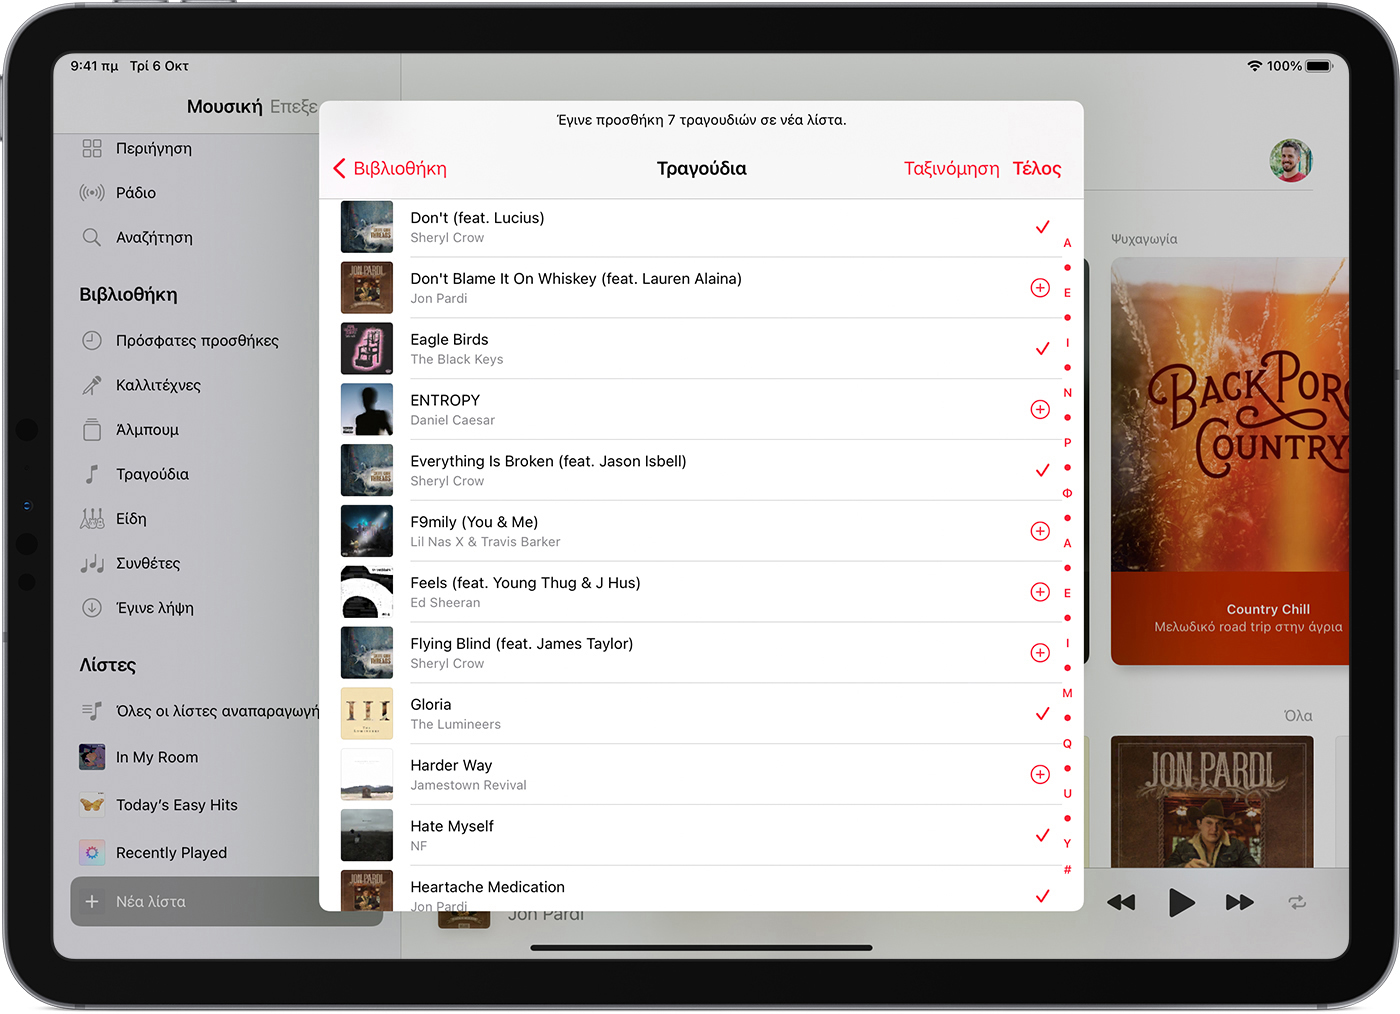 Το iPad εμφανίζει 7 τραγούδια που προστέθηκαν σε μια νέα λίστα αναπαραγωγής